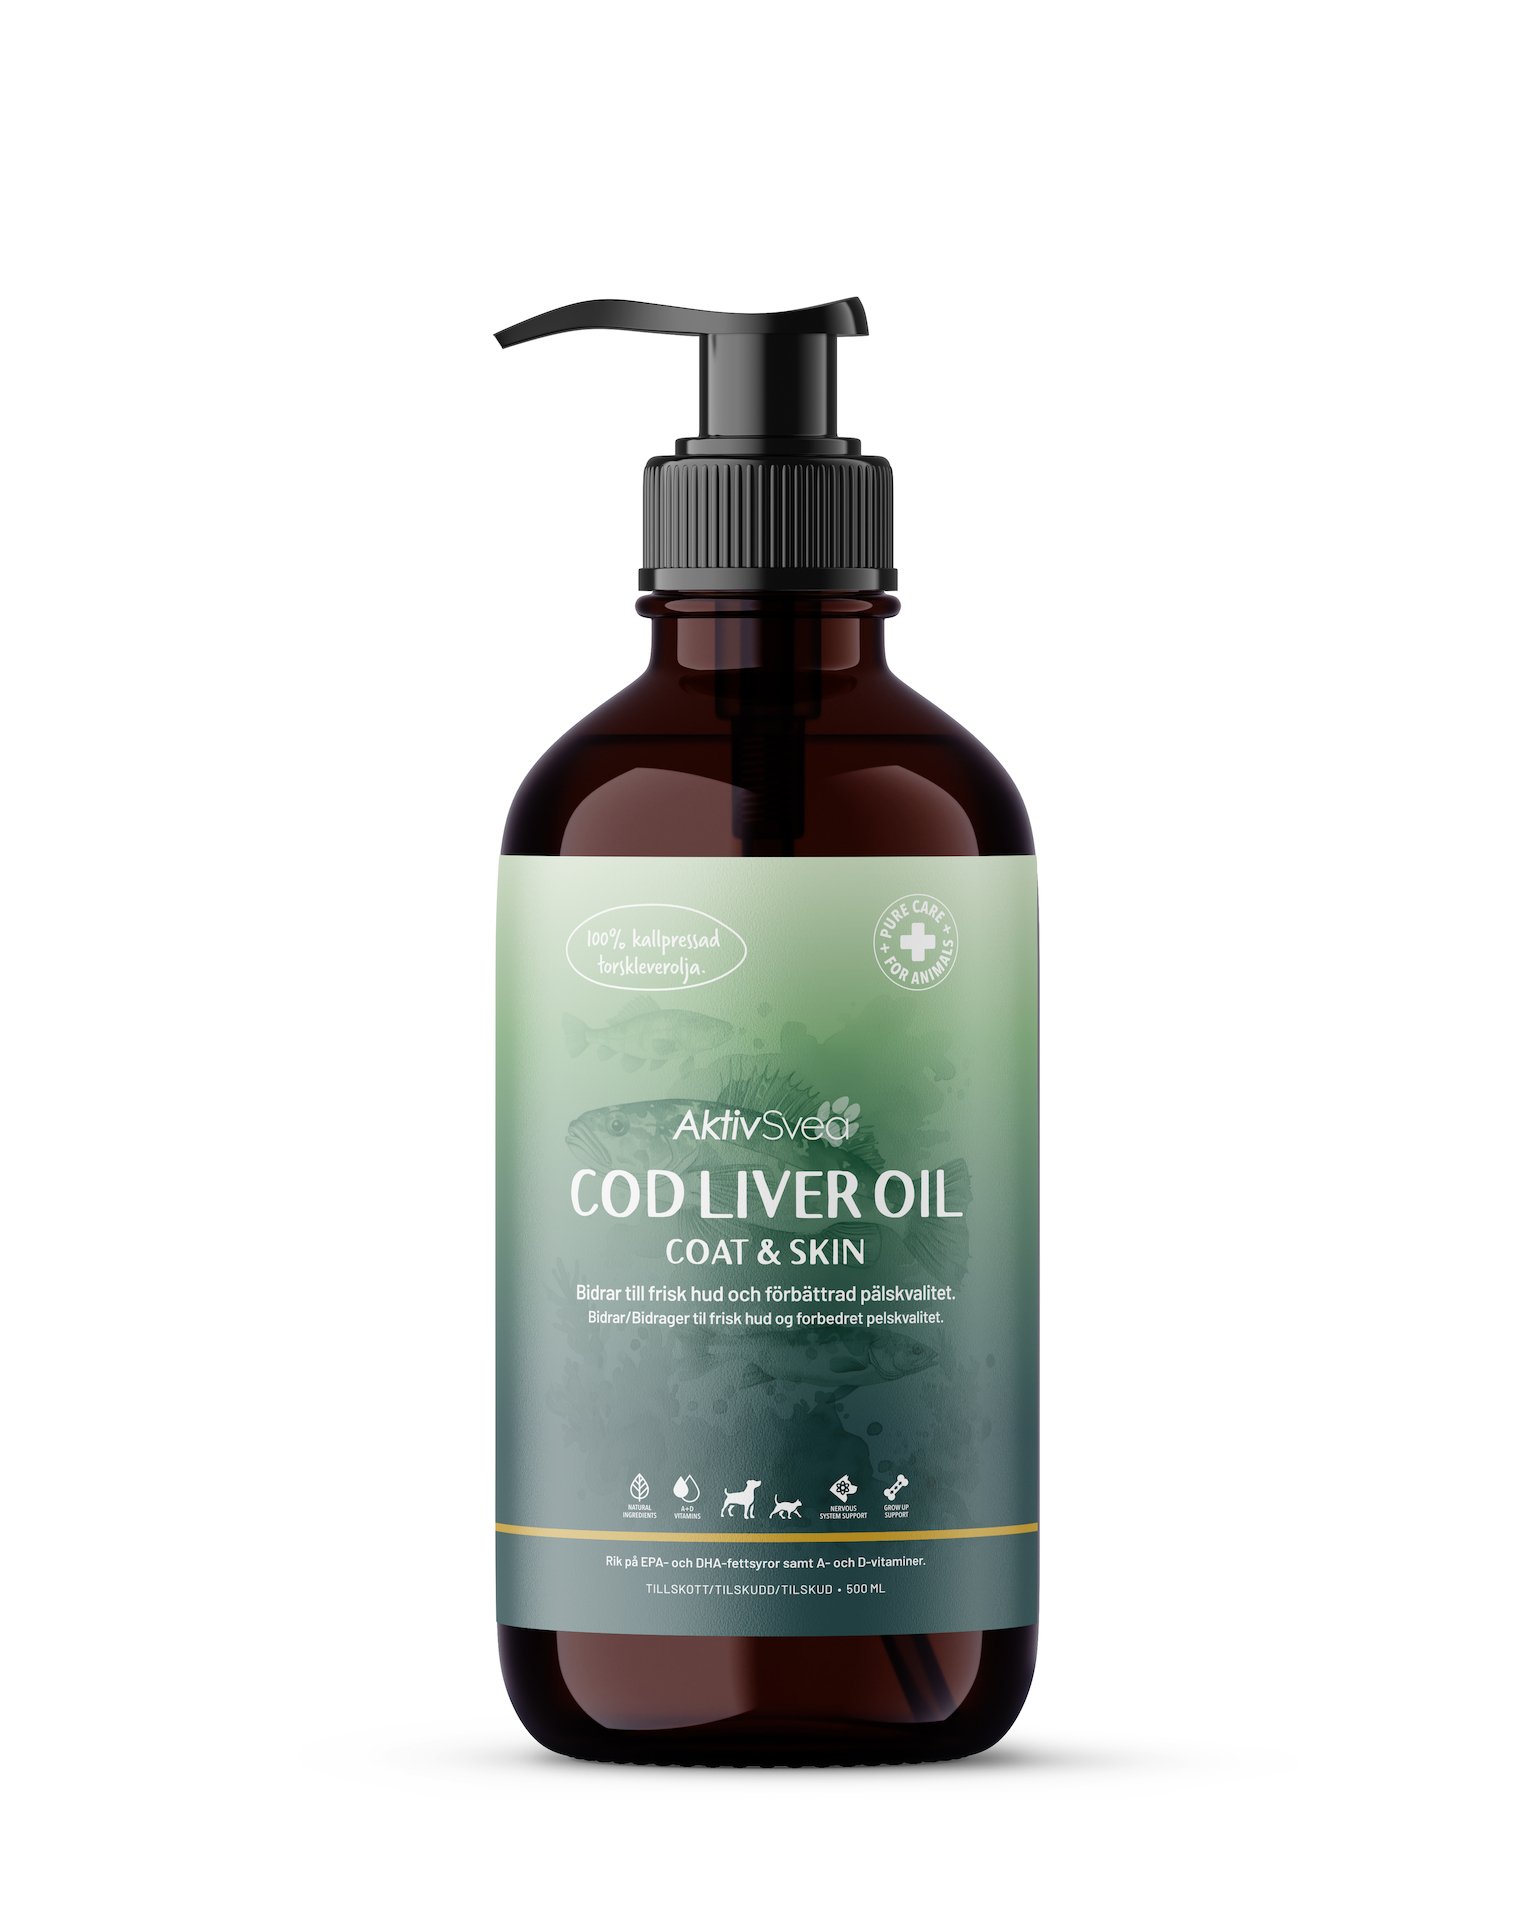 AktivSvea Cod Liver Oil Coat & Skin 500 ml